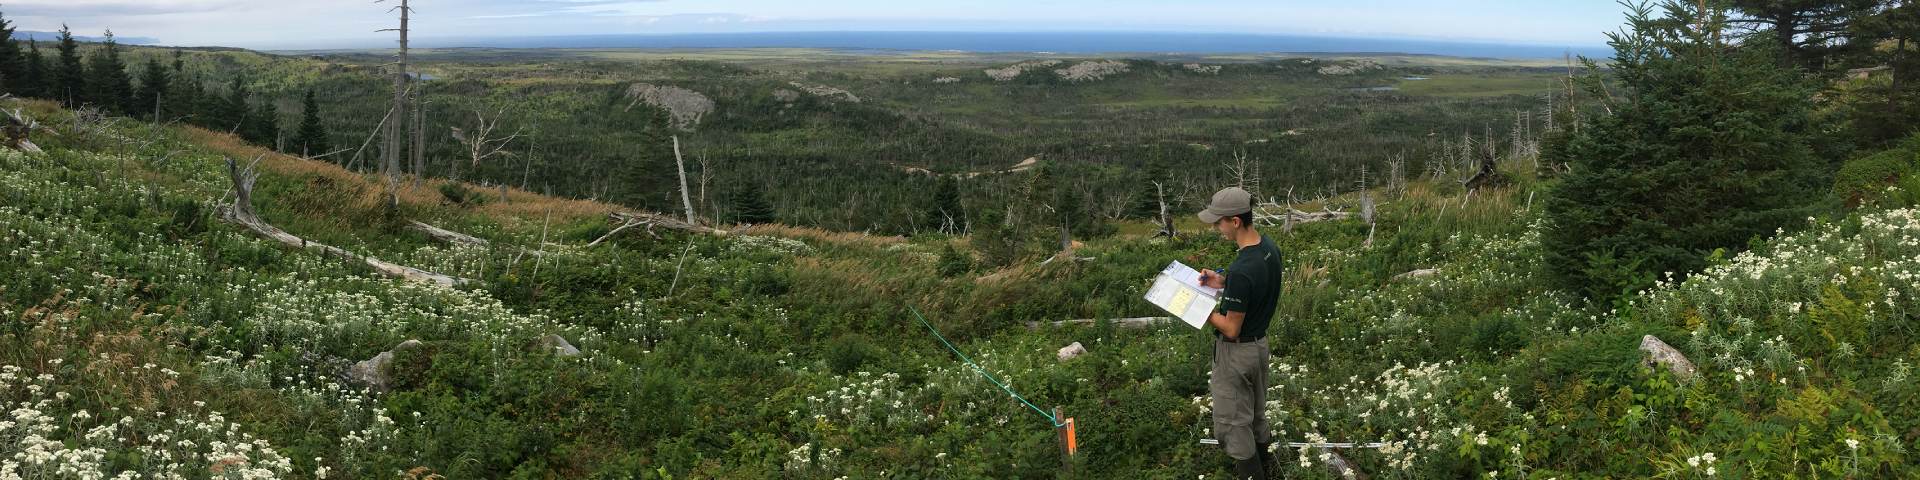 Écologiste de Parcs Canada prenant des notes dans un pré forestière.